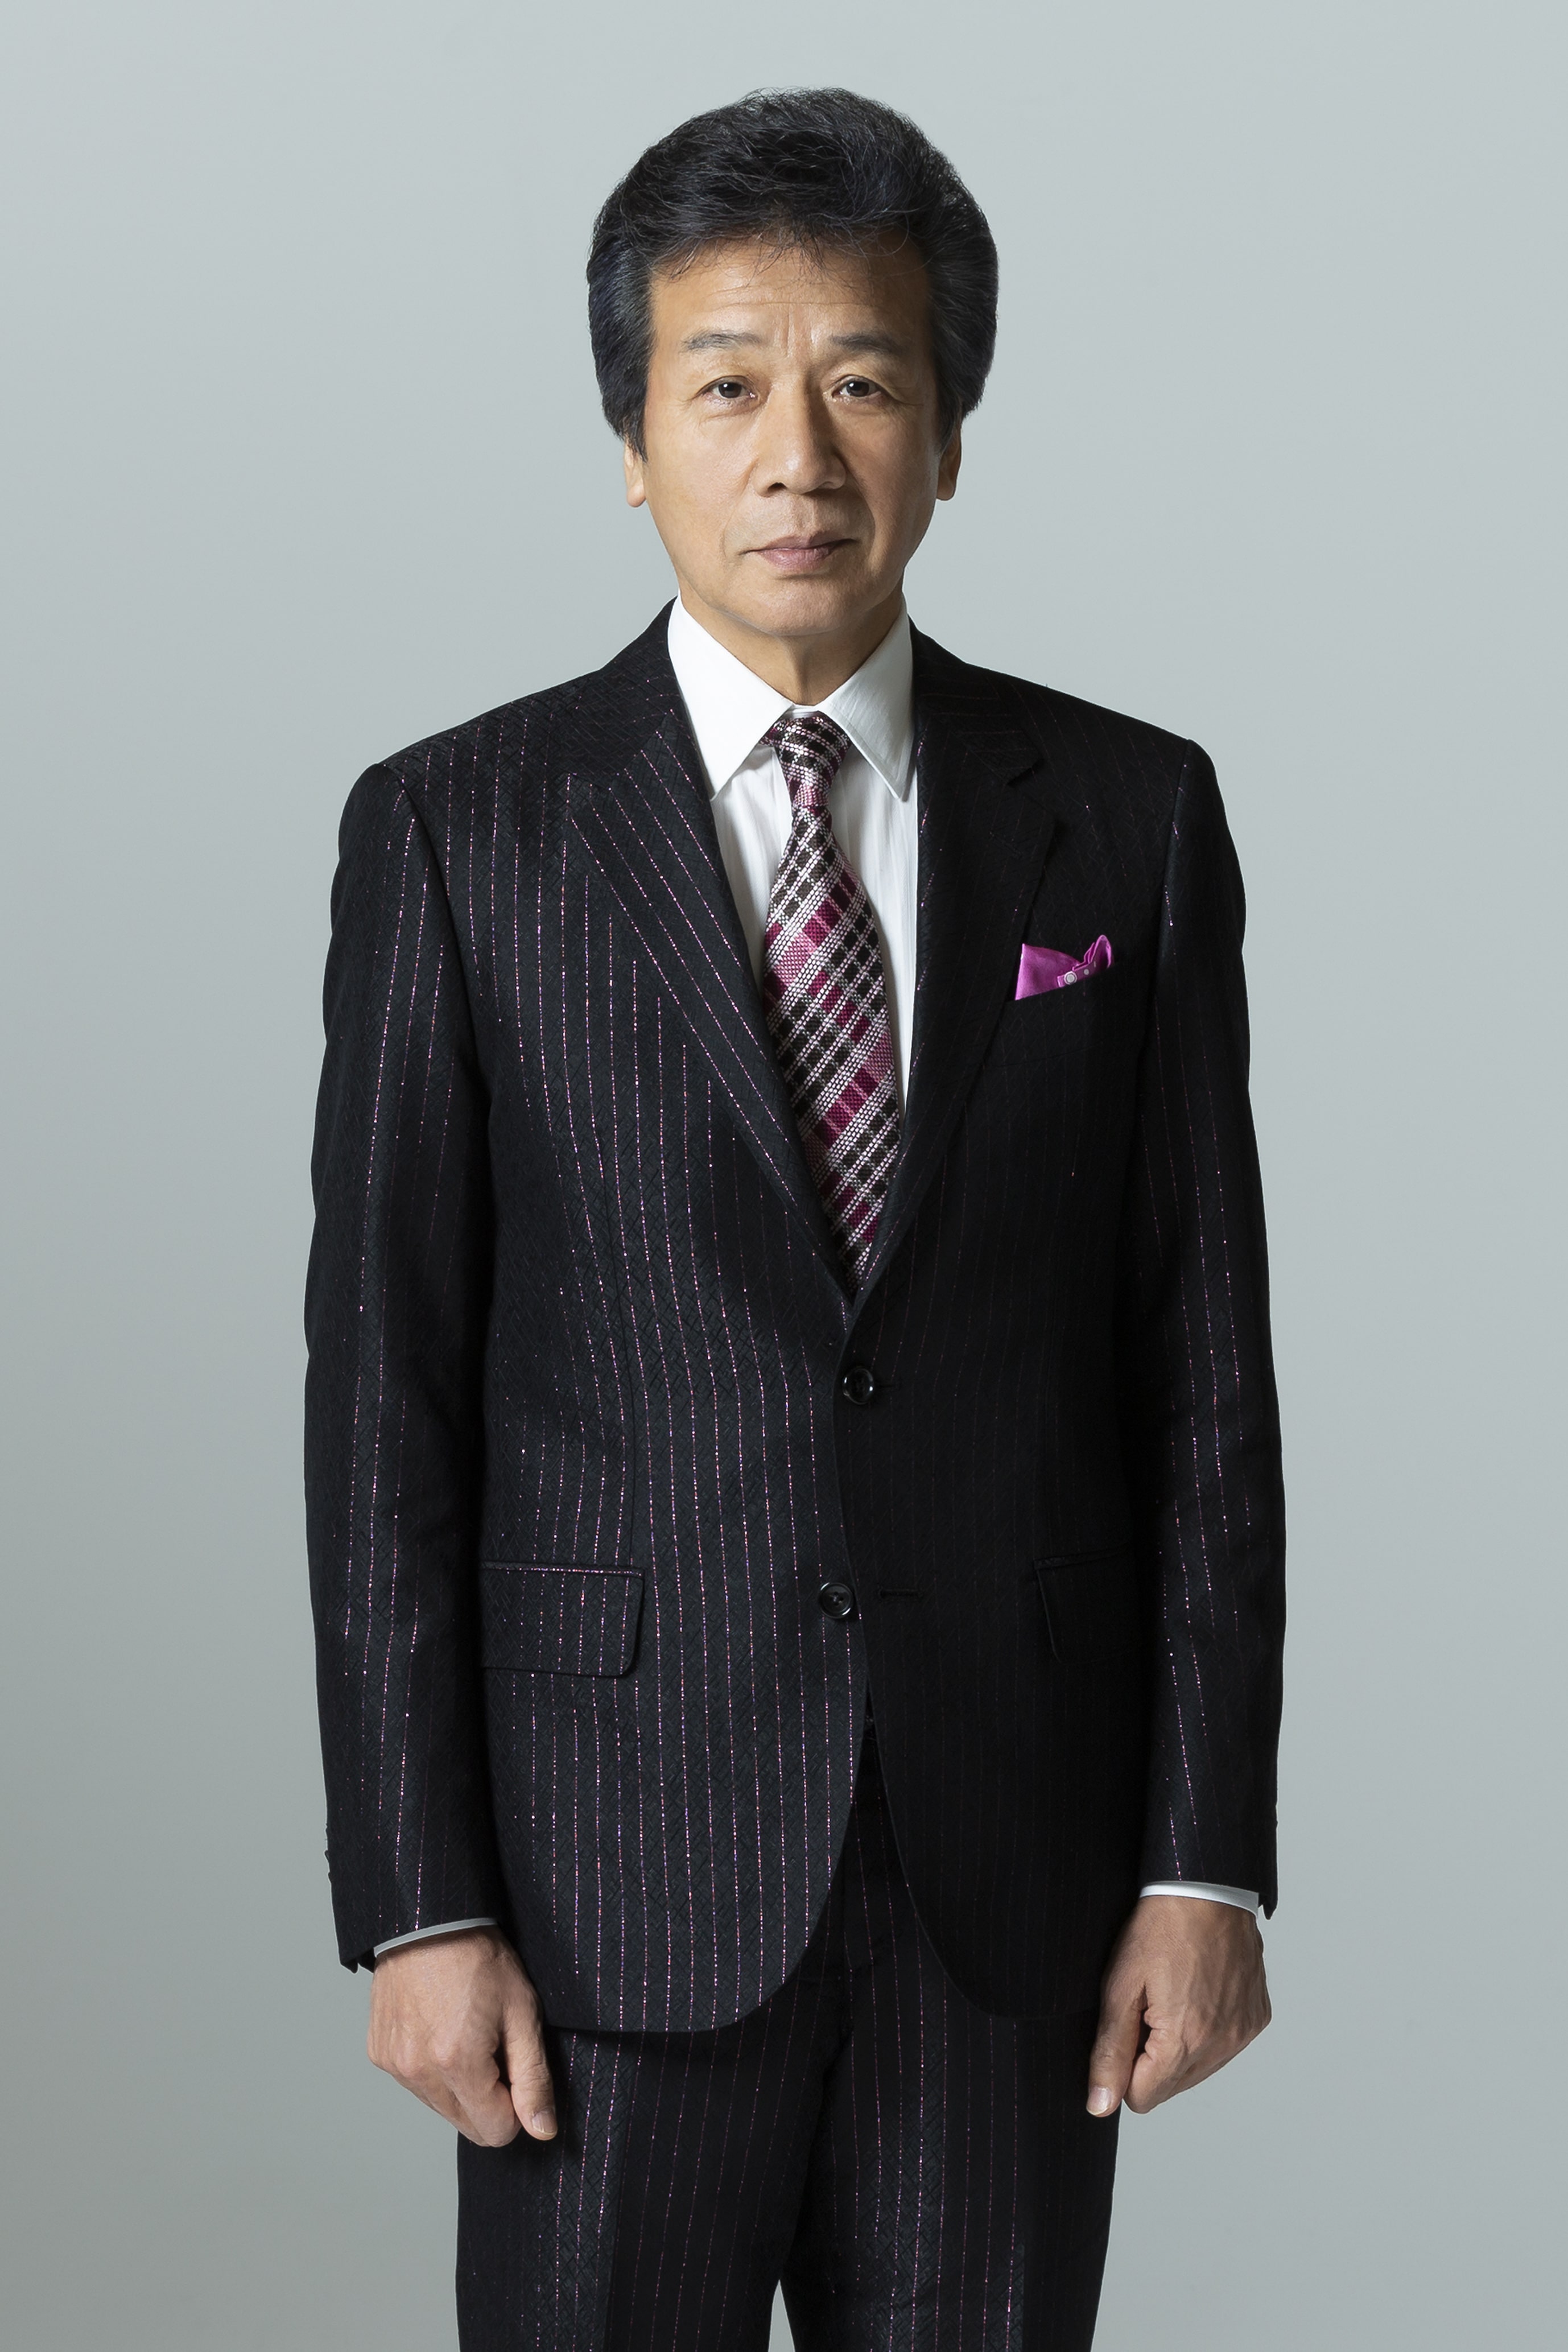 前川 清、新曲「歩いて行こう」を9/16に発売決定 | Daily News | Billboard JAPAN